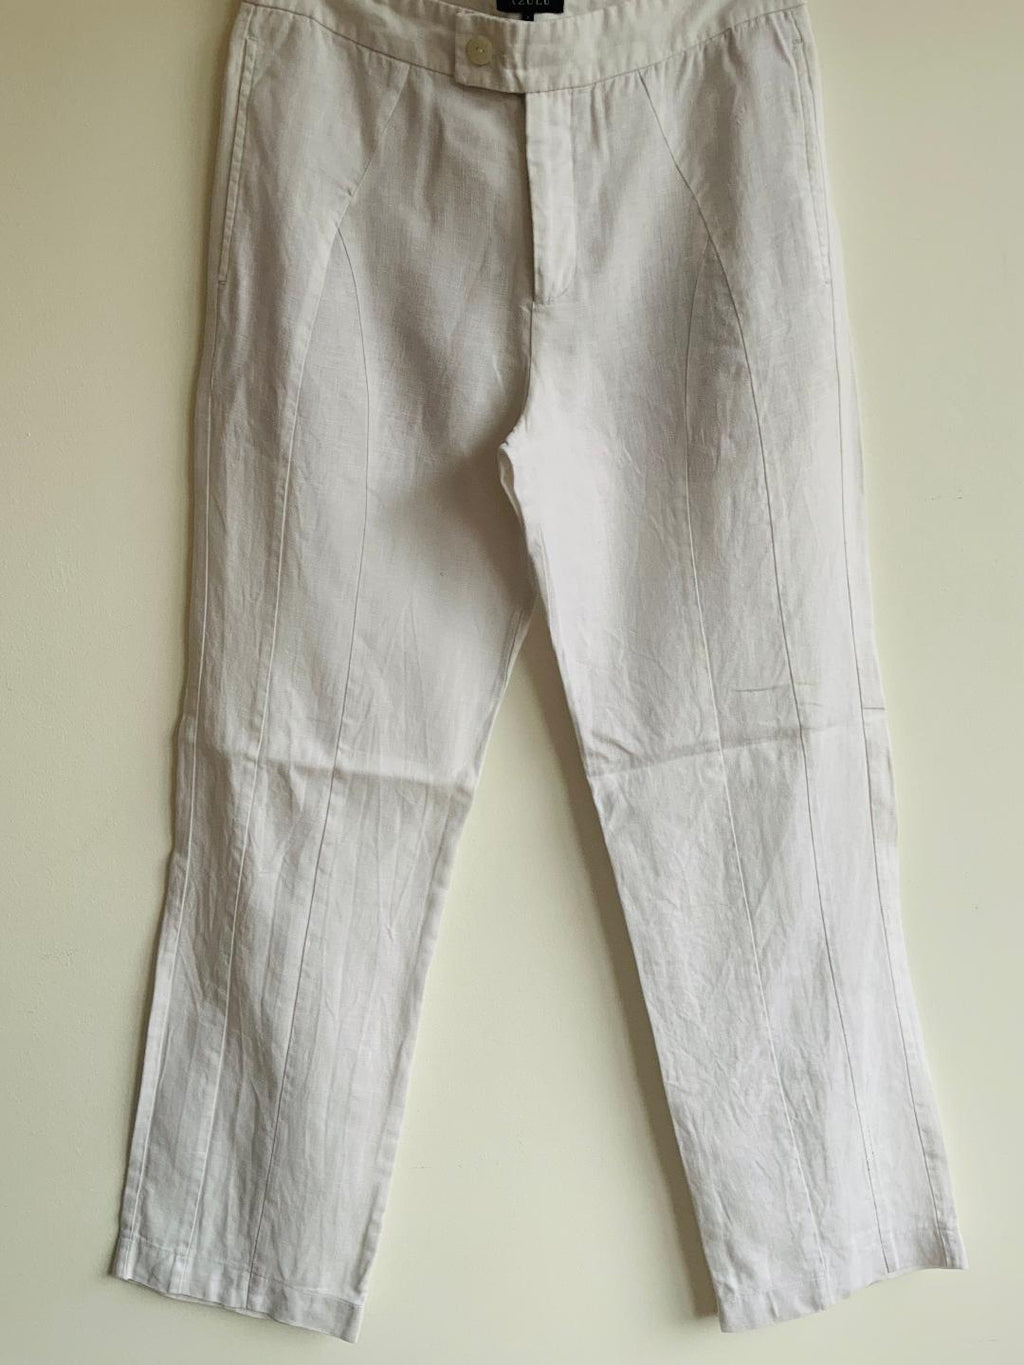 AZULU Pantalón en tela lino para hombre. Talla M